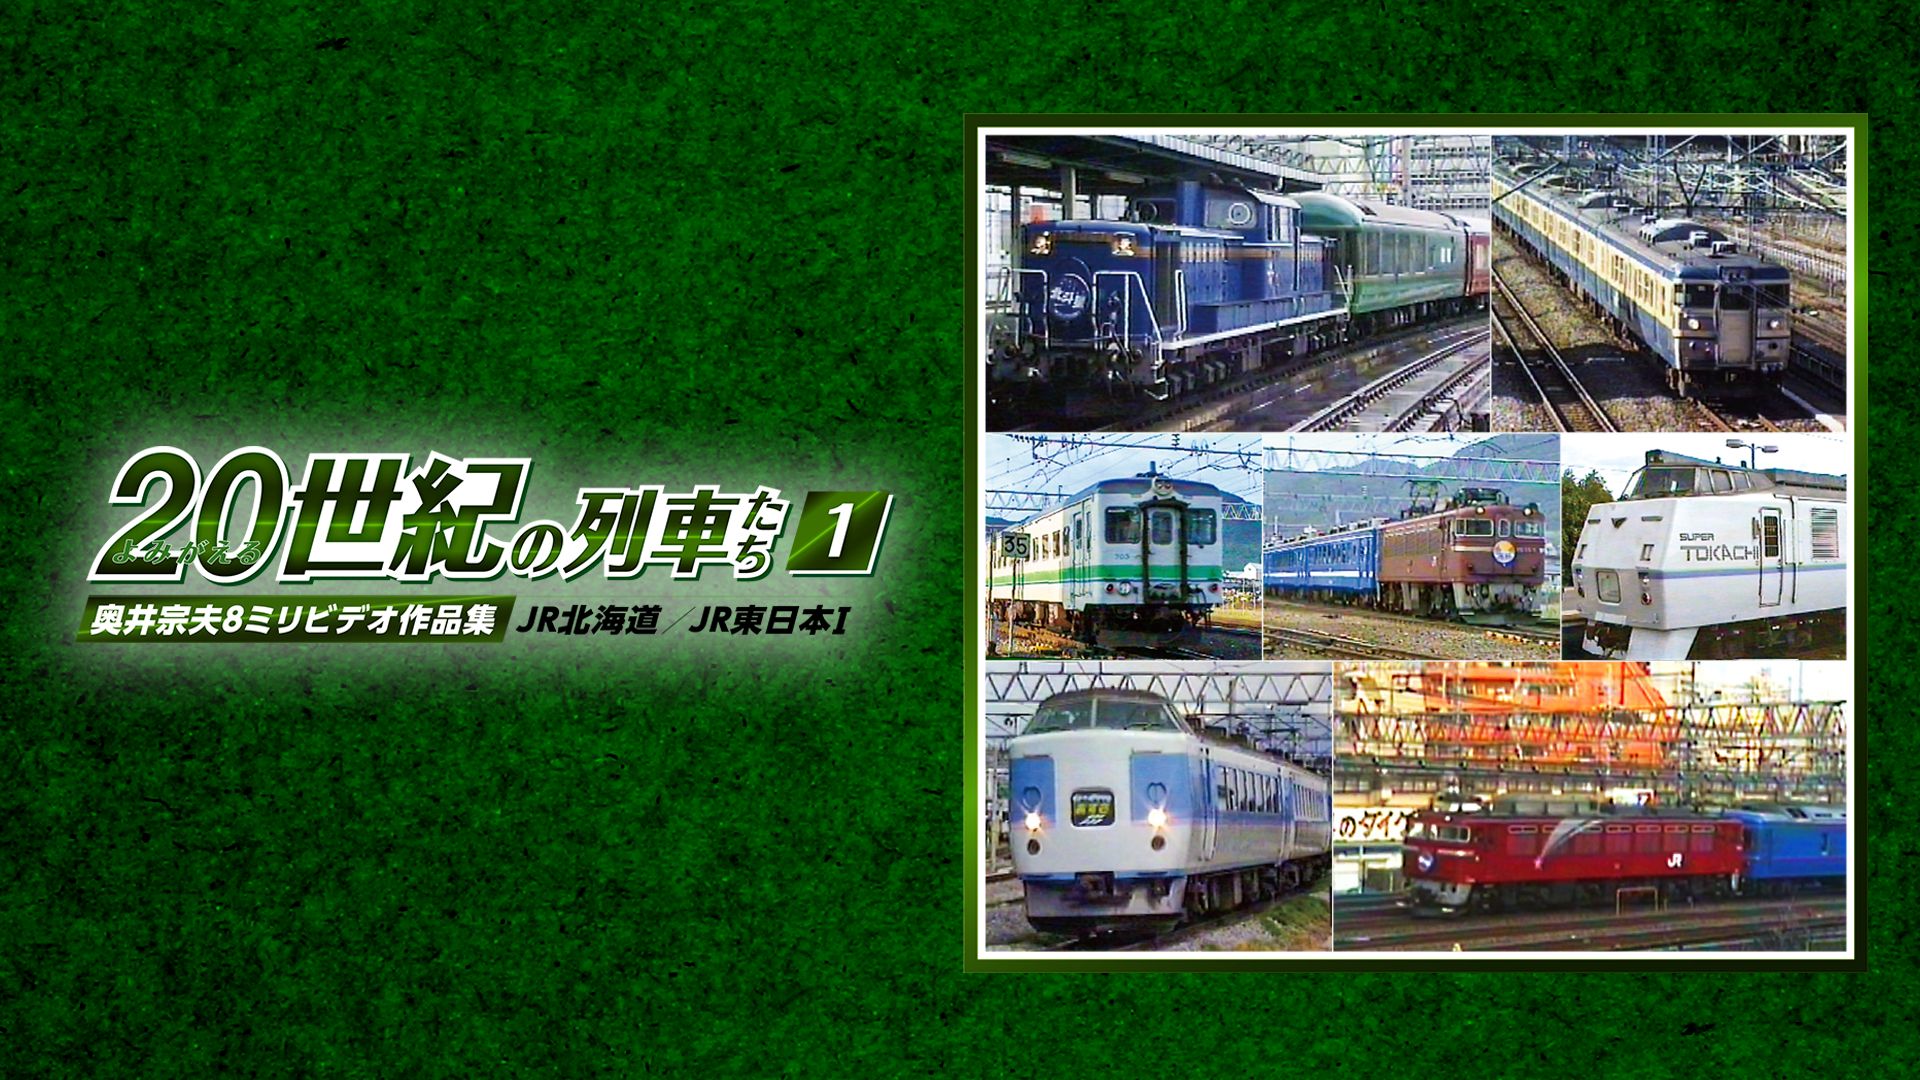 よみがえる20世紀の列車たち1JR北海道